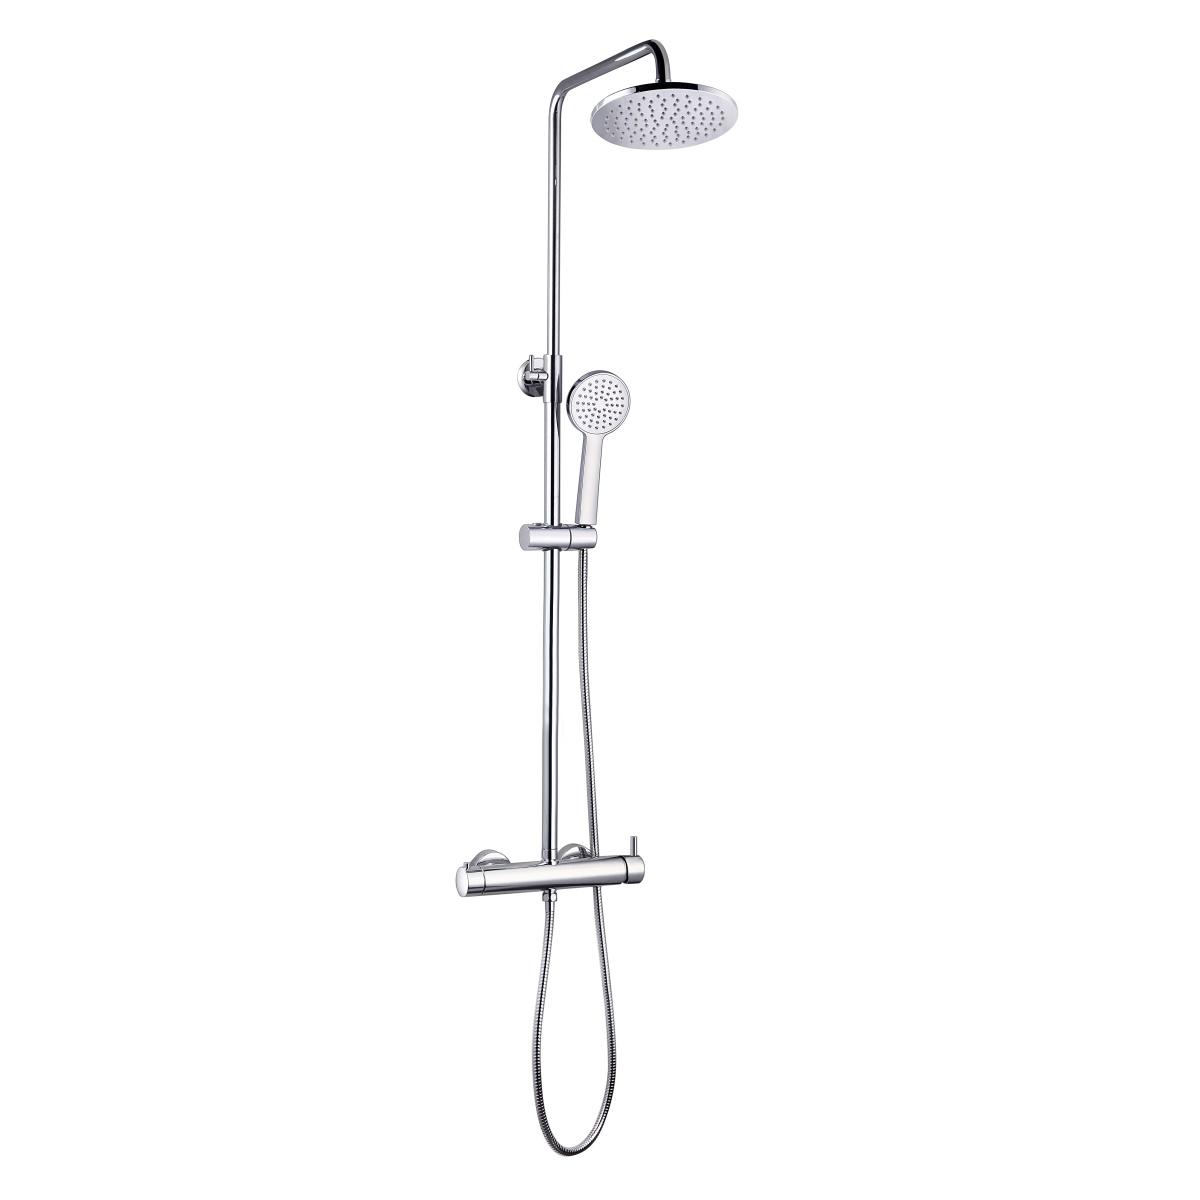 YS34184 シャワーコラム、シャワー蛇口付きレインシャワーコラム、高さ調節可能。